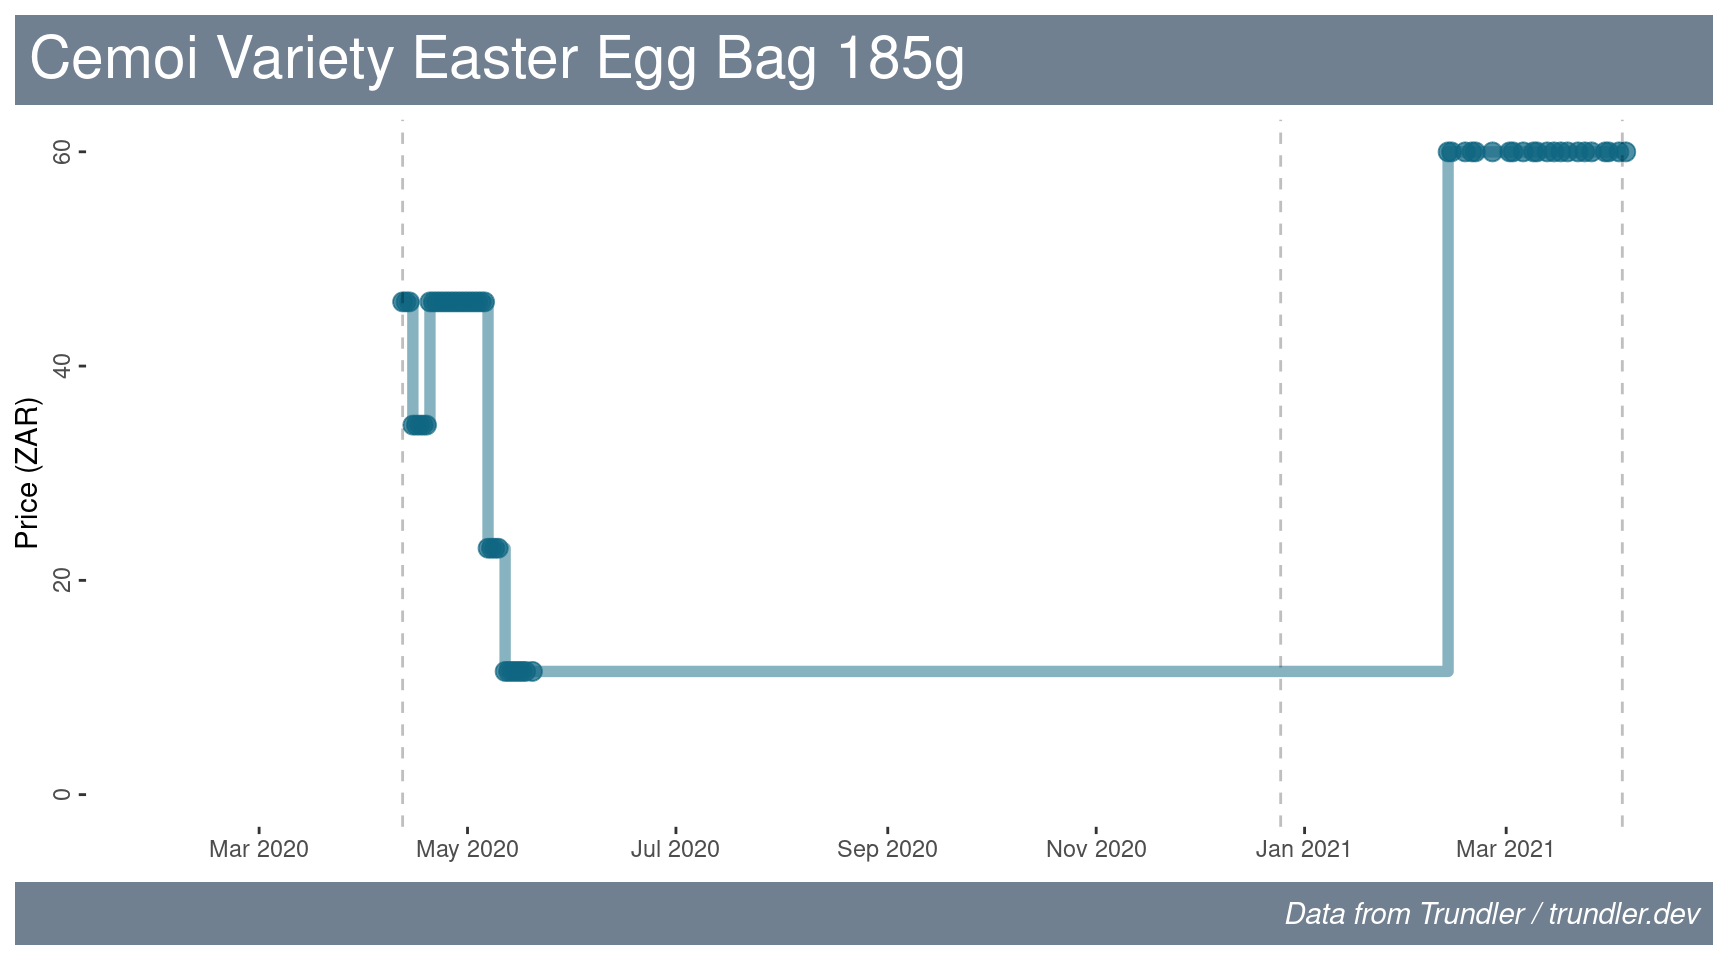 Price history for Cemoi Variety Easter Egg Bag.